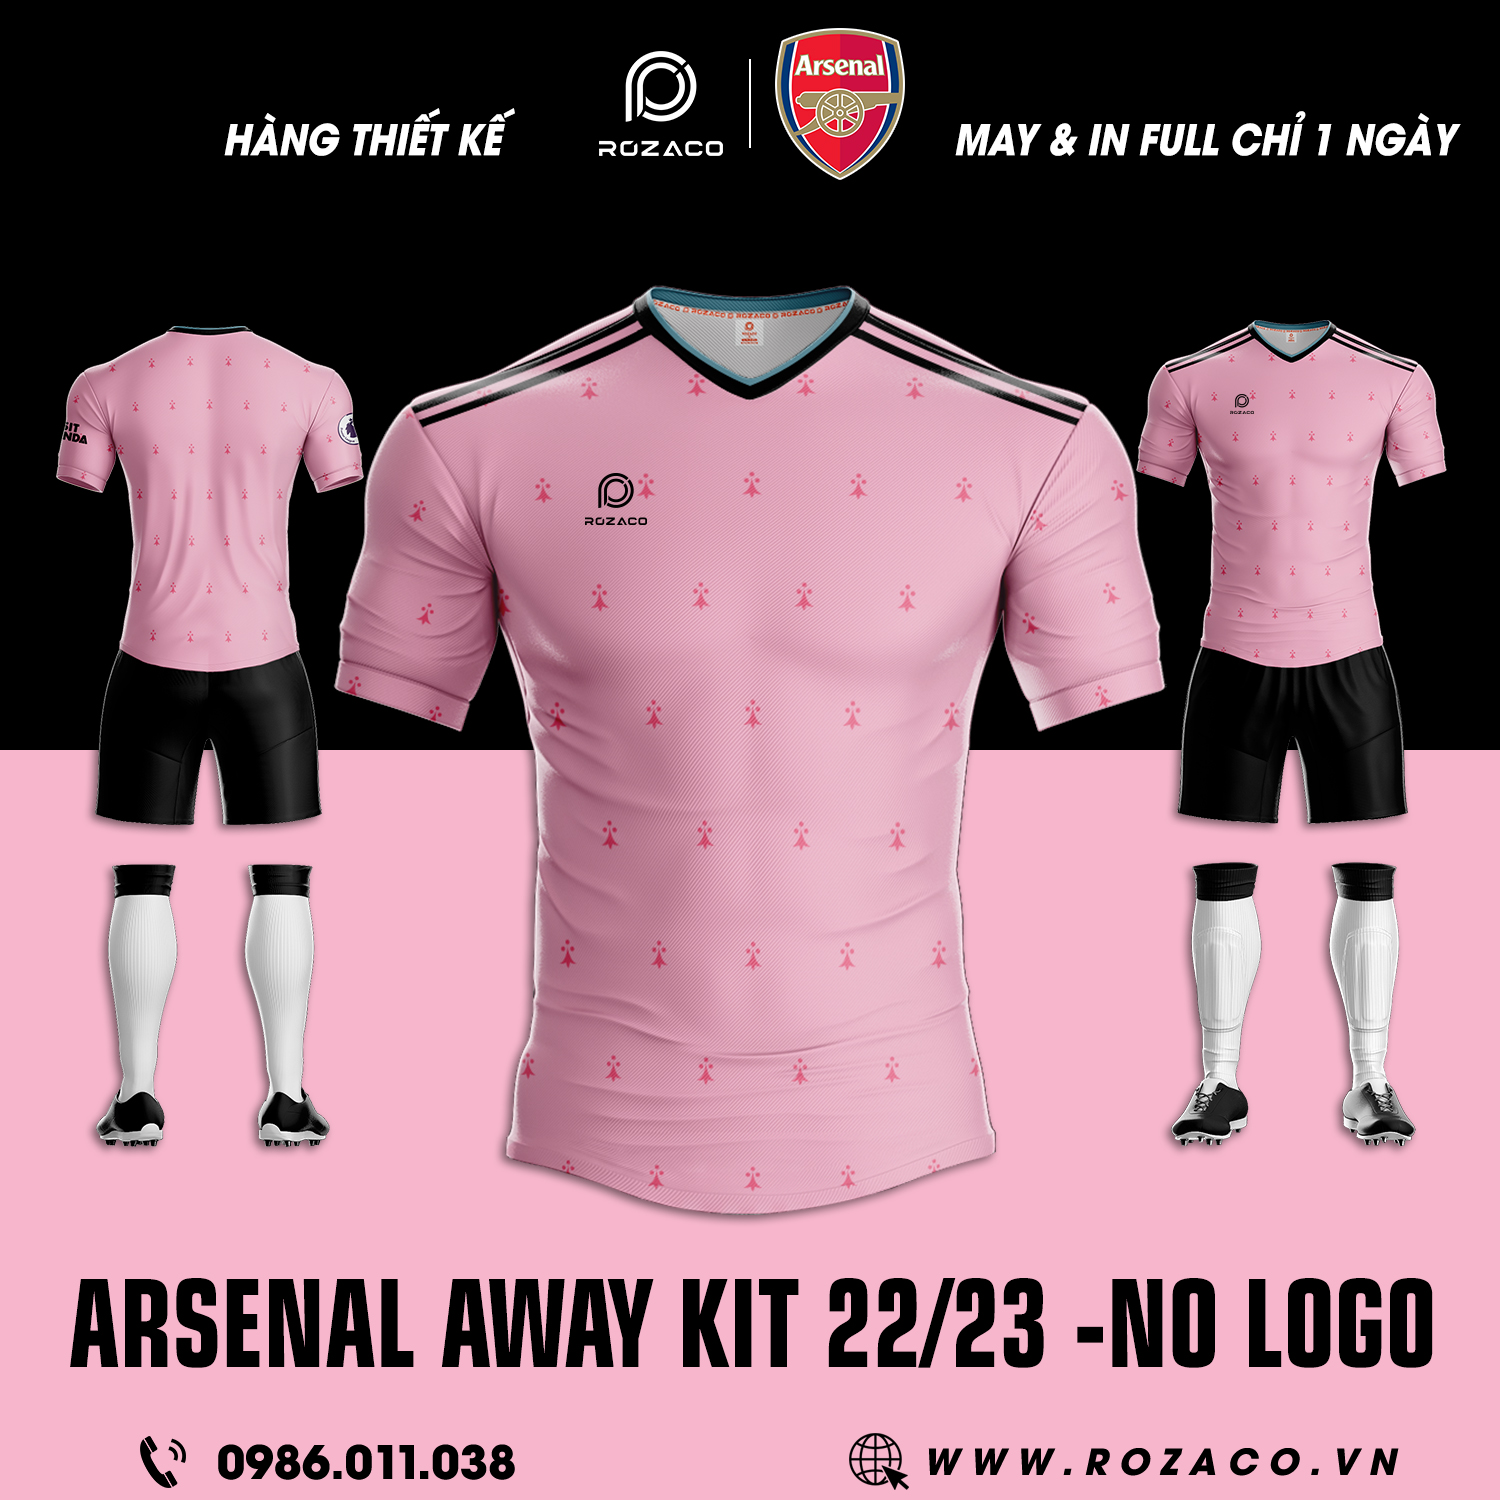 Trang Phục Áo Đá Banh CLB Arsenal Sân Khách 2022 - 2023 Không Logo Mới sở hữu phiên bản màu hồng ấn tượng. Nó được kết hợp cùng với các họa tiết li ti đẹp mắt trên áo. Một thiết kế đáng để bạn sở hữu. 